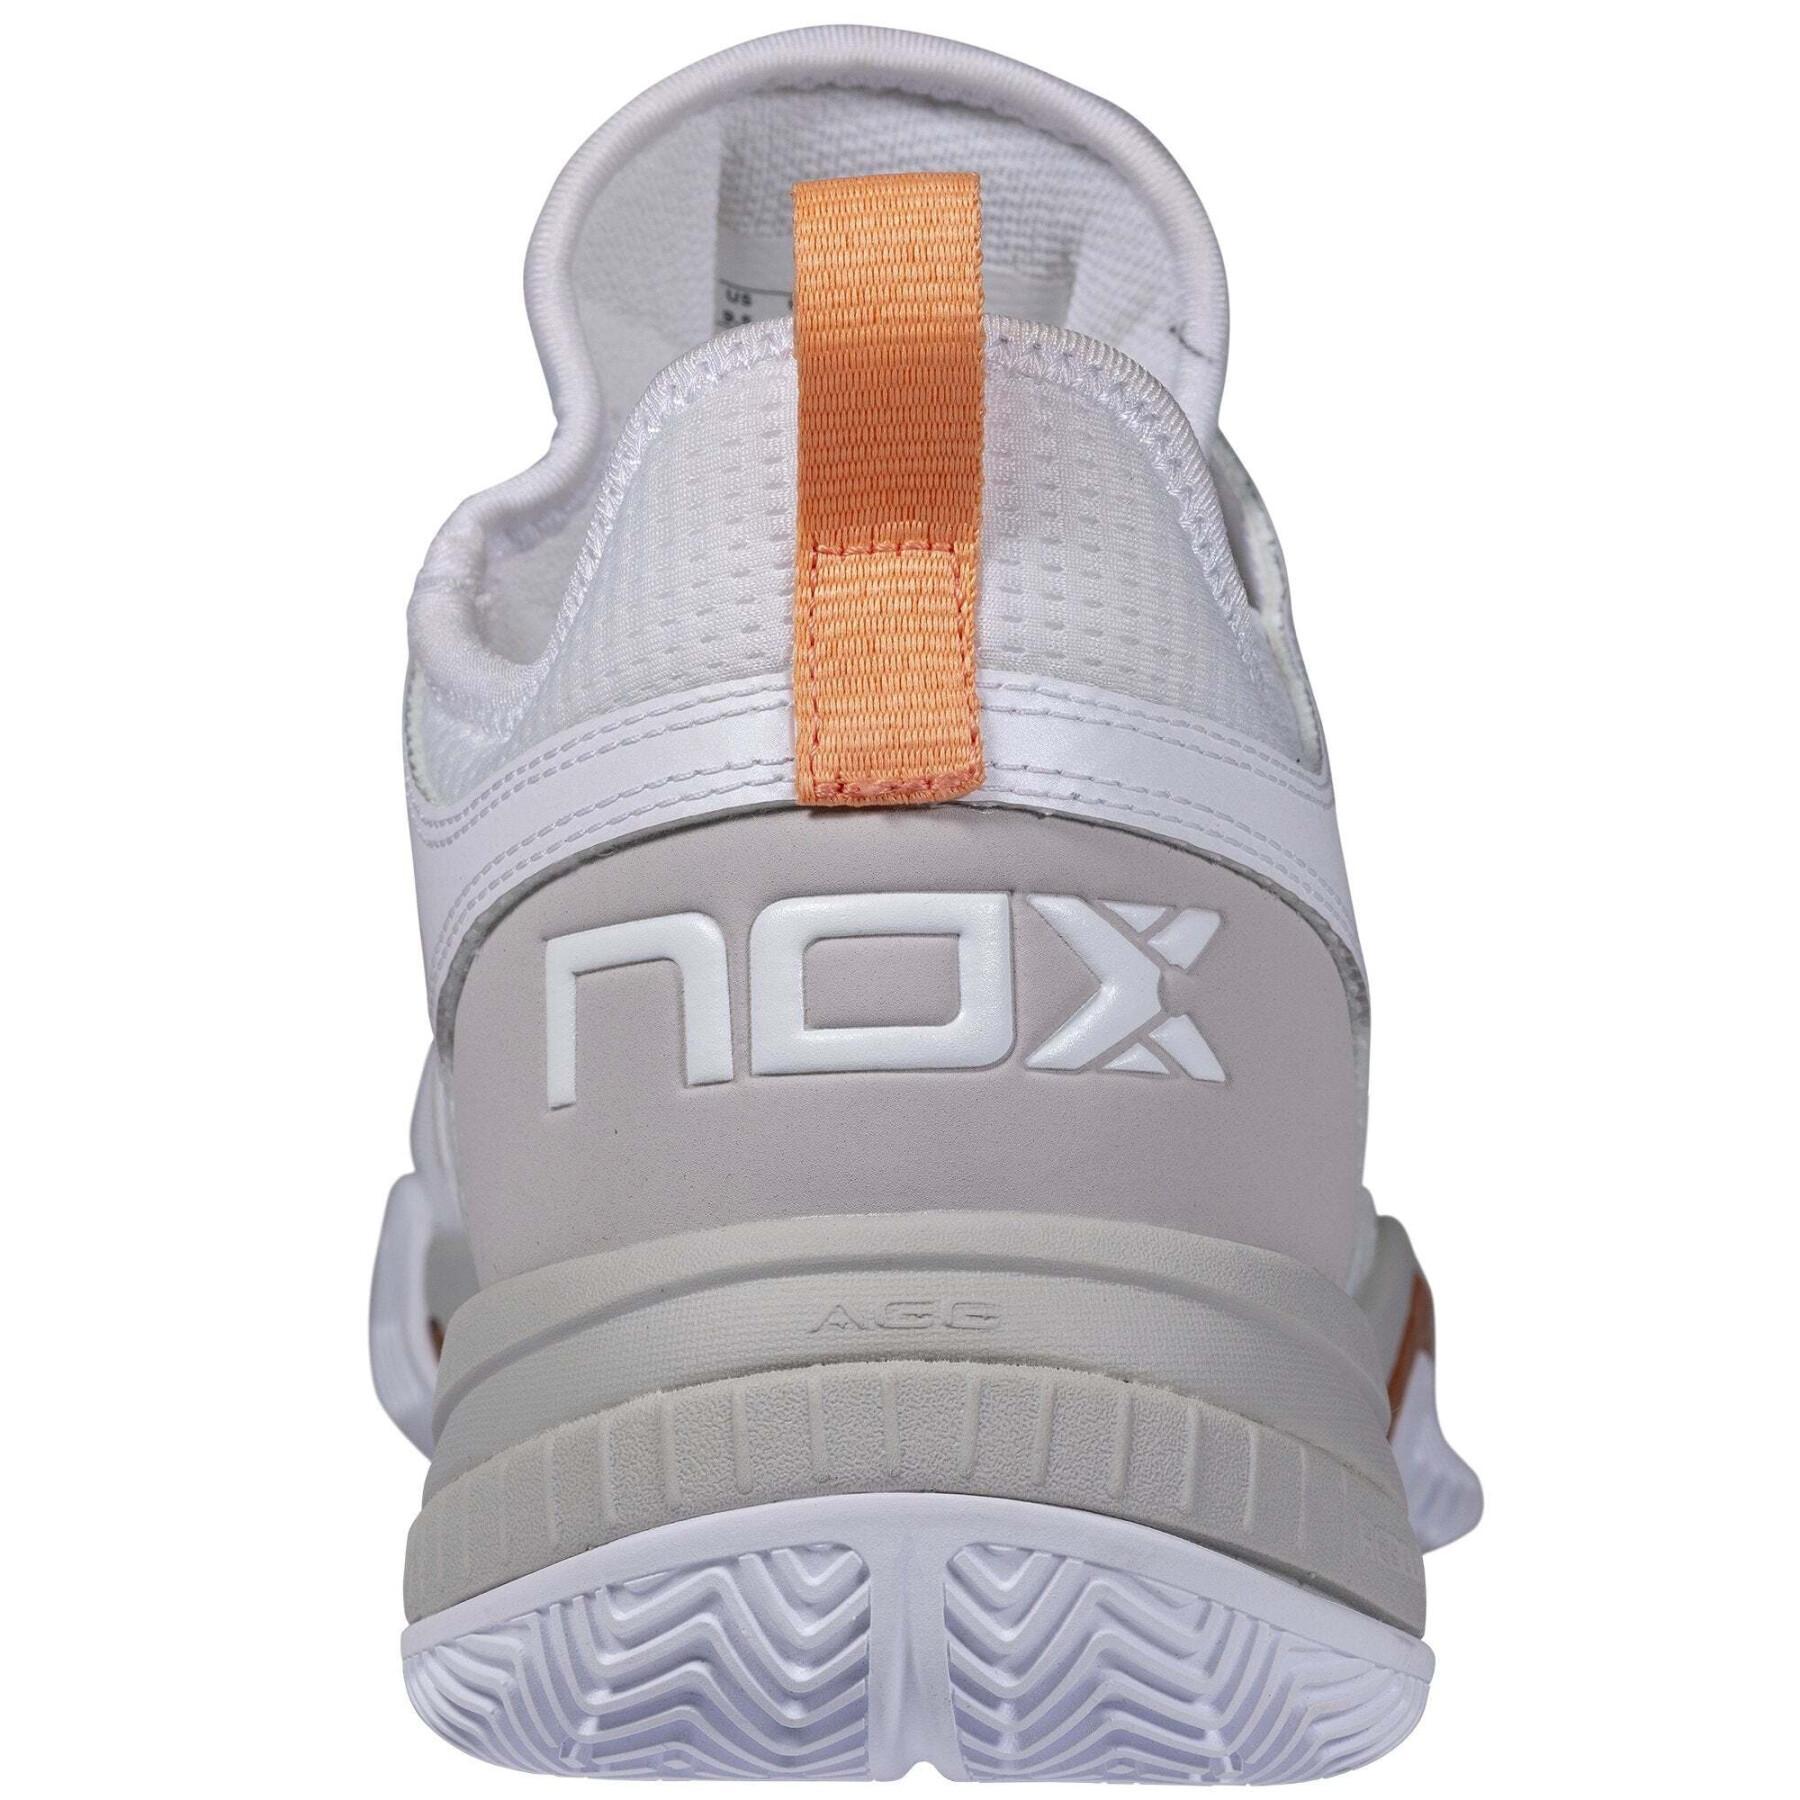 Zapatos de padel Nox Calzado Lux Nerbo